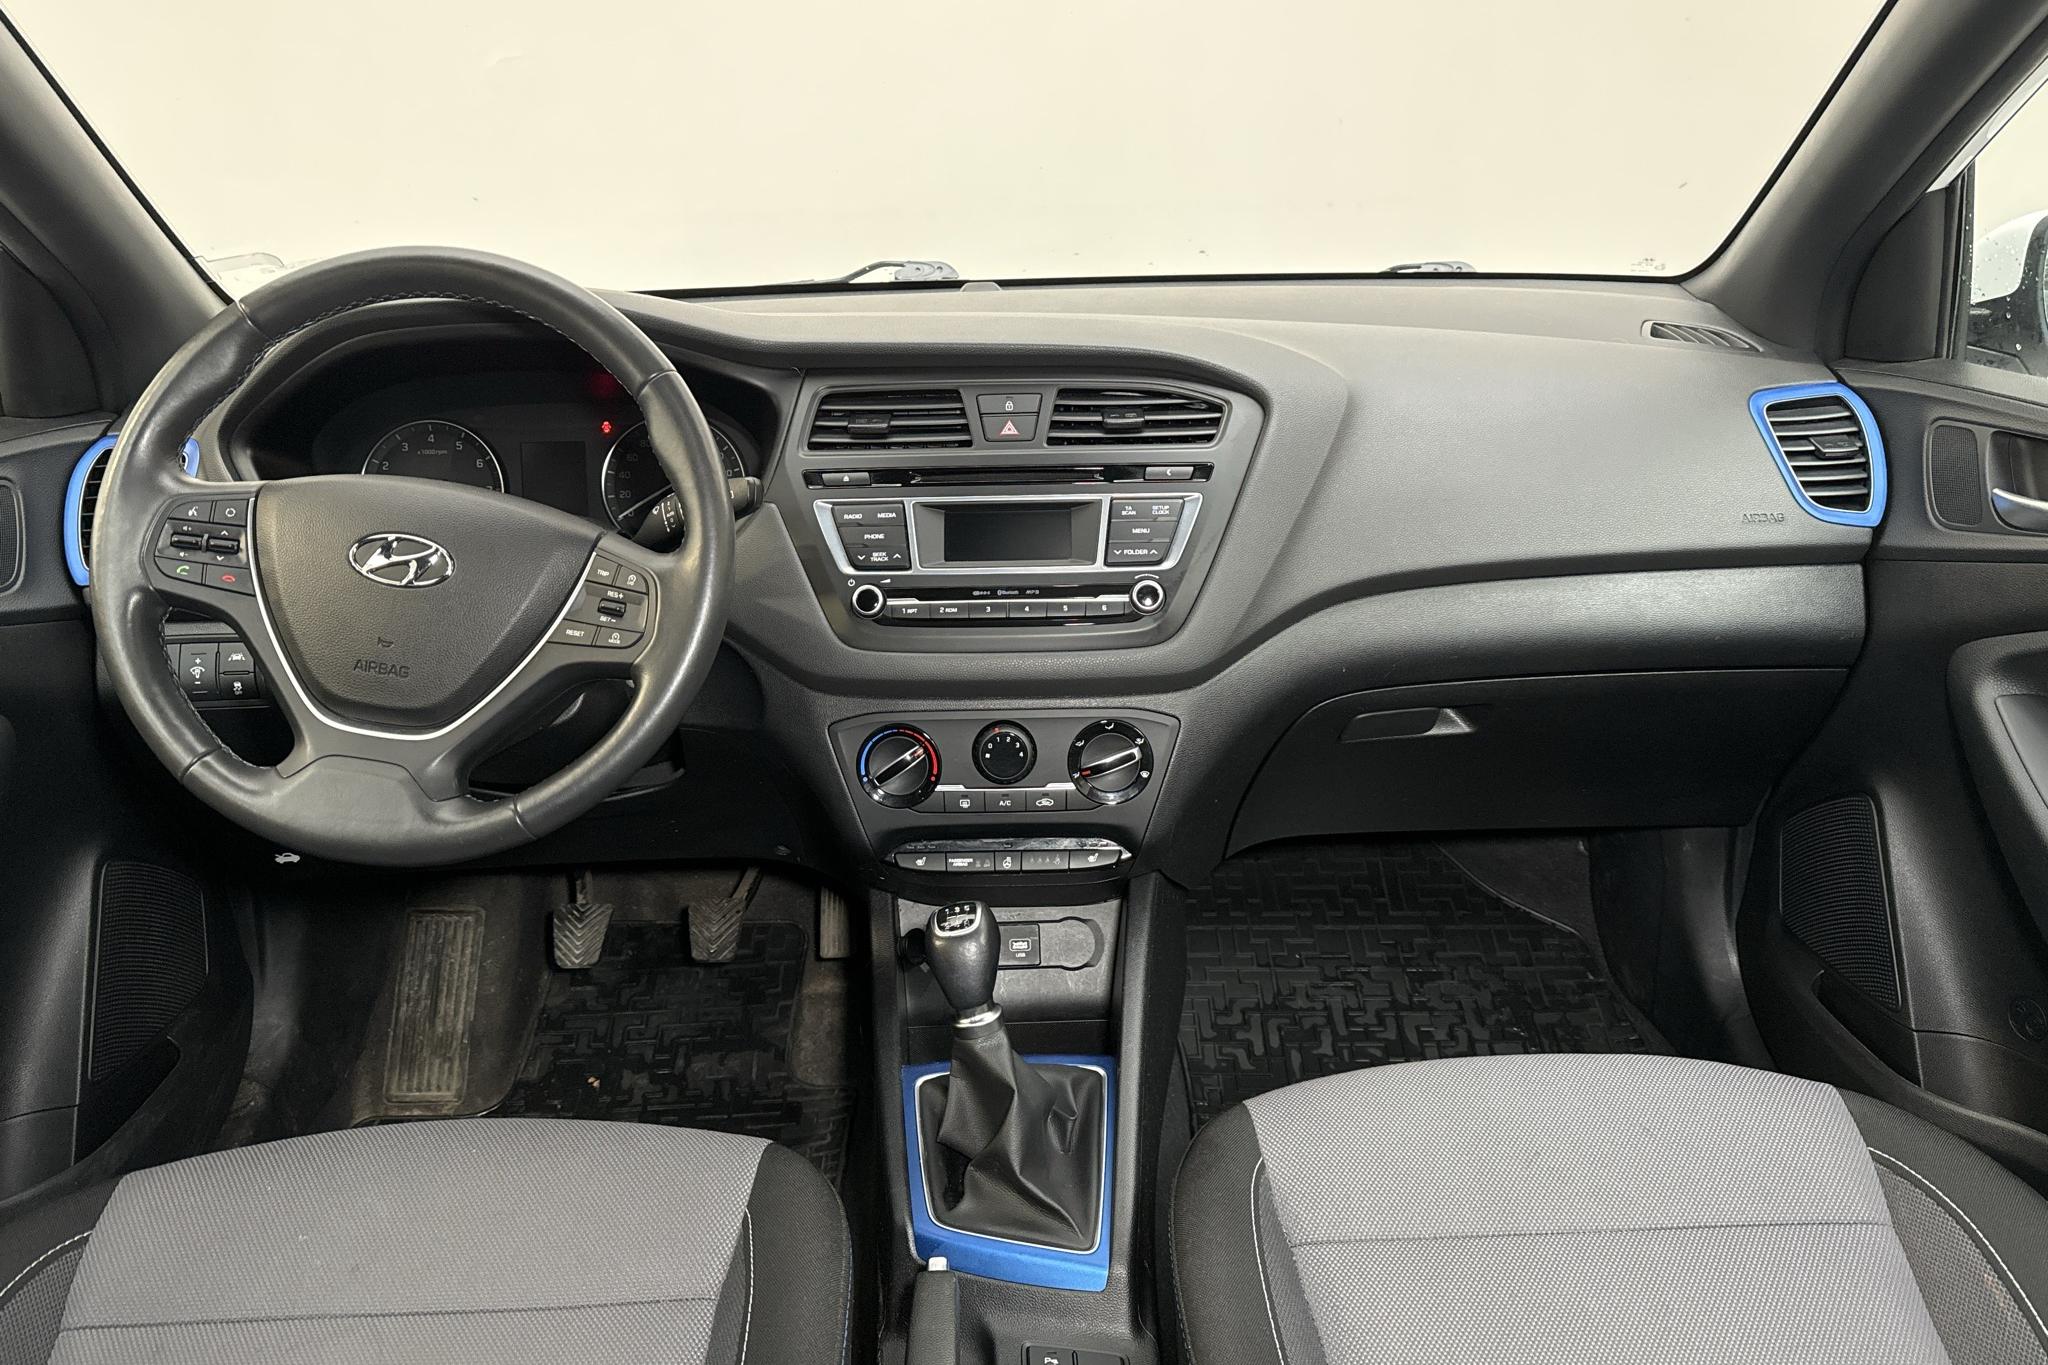 Hyundai i20 1.2 (84hk) - 74 390 km - Manual - white - 2017